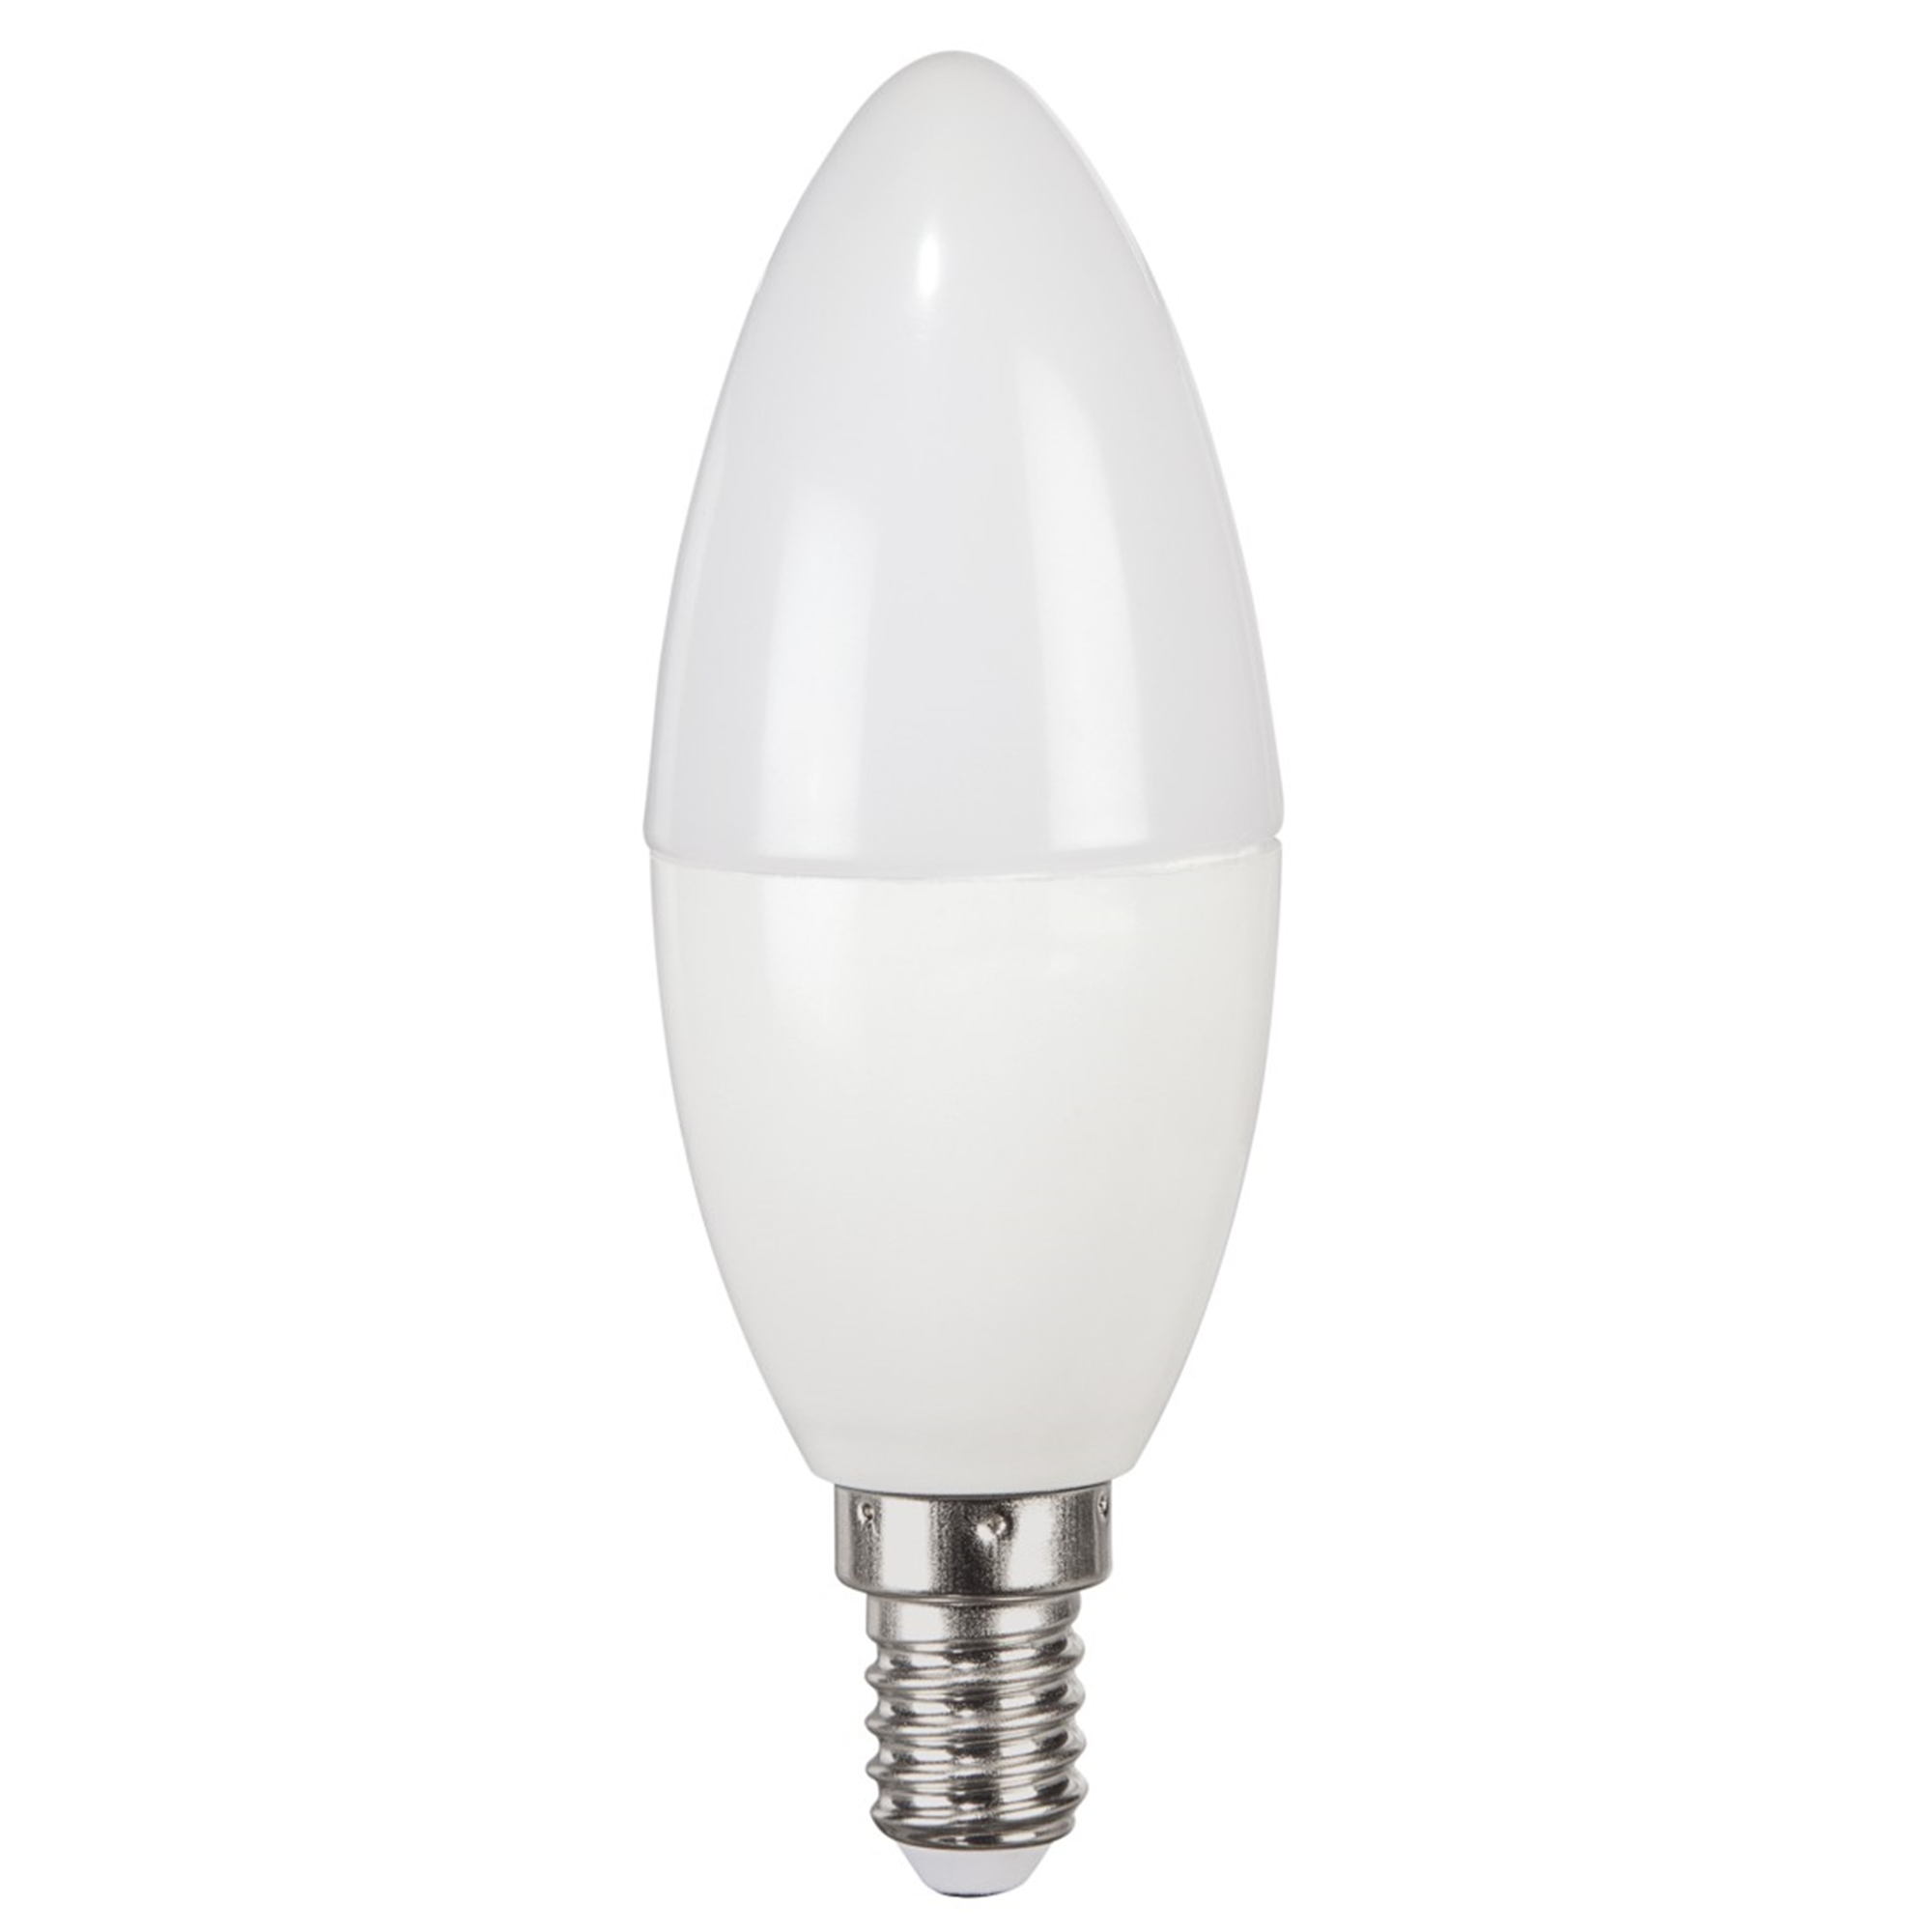 XAVAX E14, 806lm E14 LED-Lampe ersetzt Warmweiß 60W